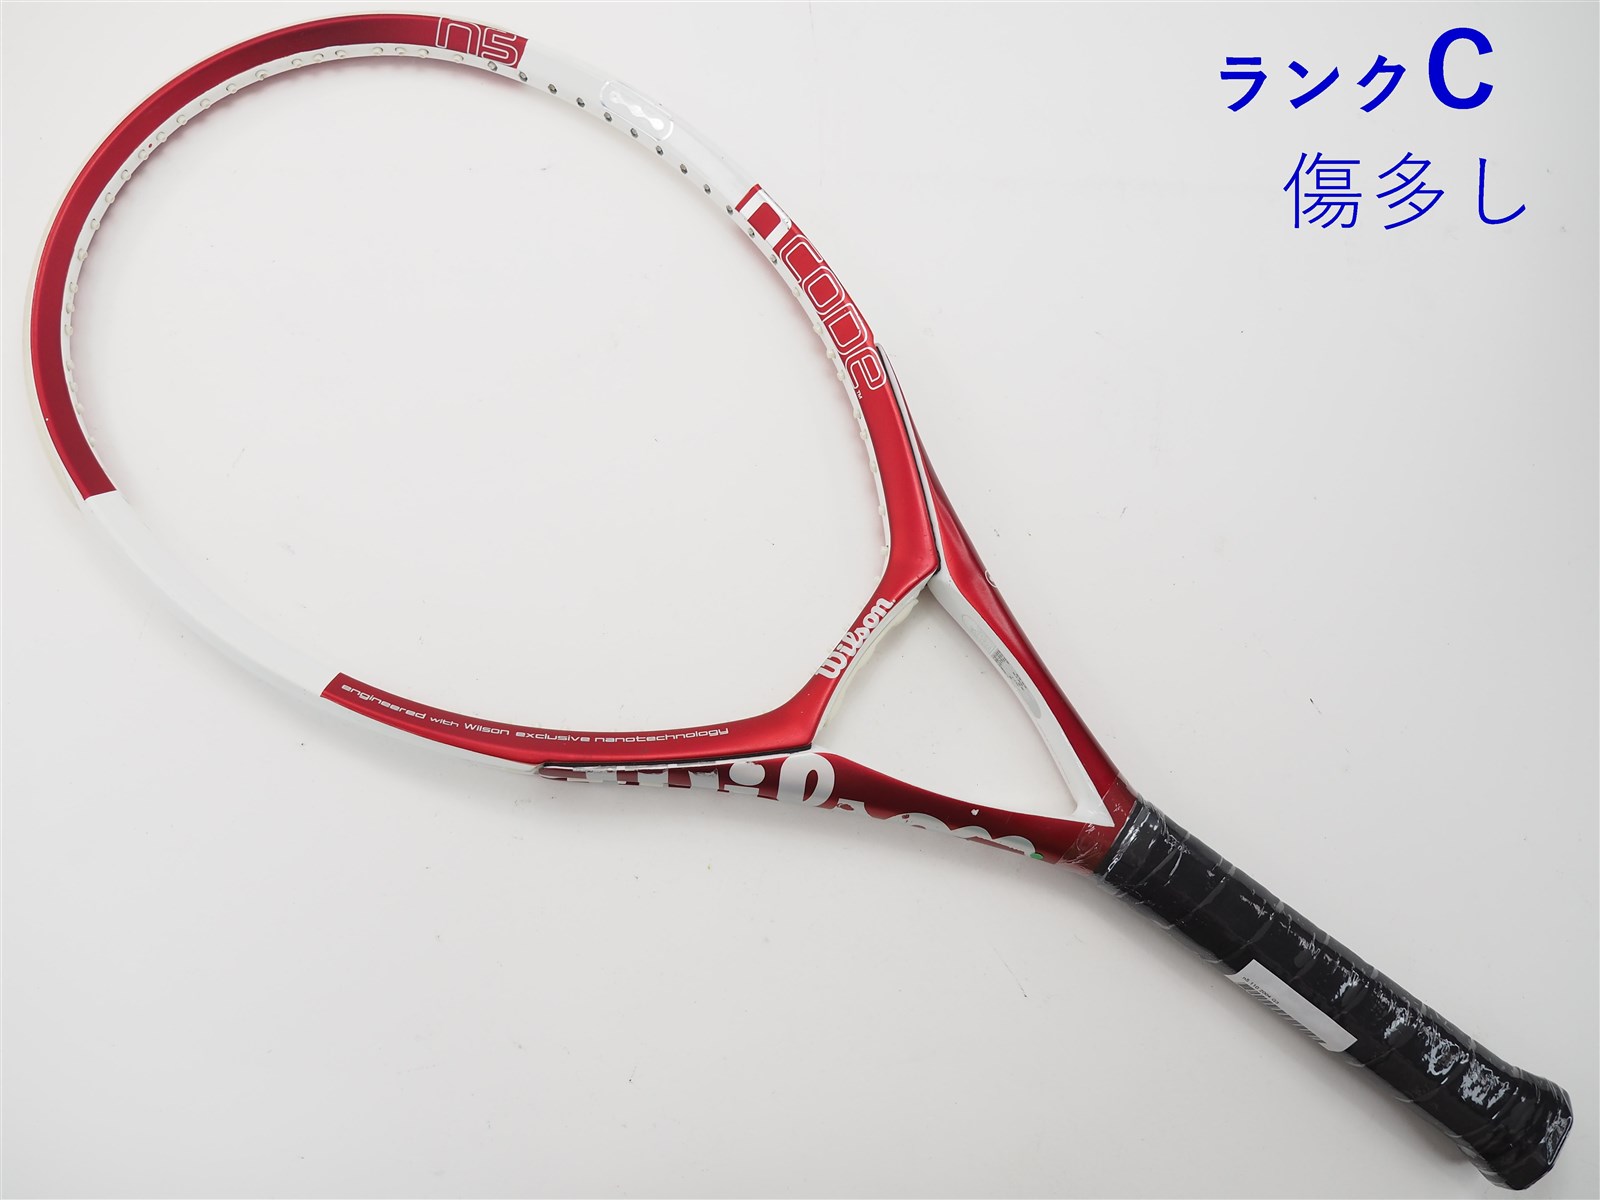 【中古】ウィルソン エヌ5 110 2004年モデルWILSON n5 110 2004(G3)【中古 テニスラケット】【送料無料】